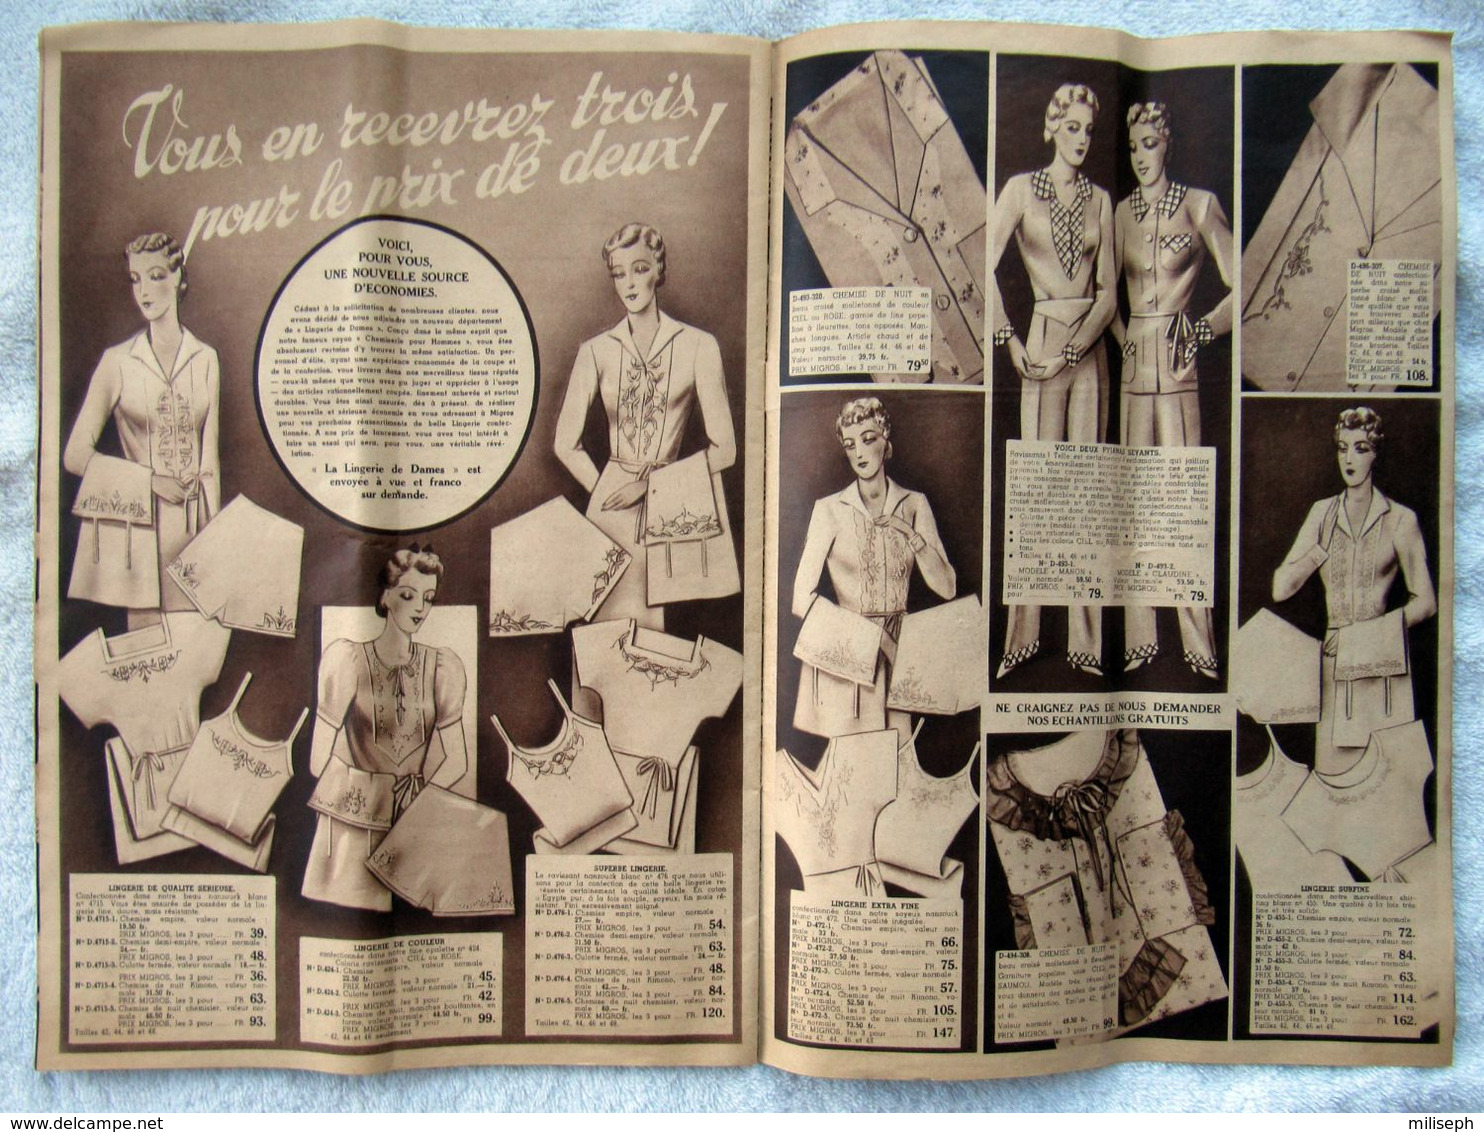 Catalogue D' Hiver MIGROS - Bruxelles - Années 1938 / 1939 -    (4843) - Lakens